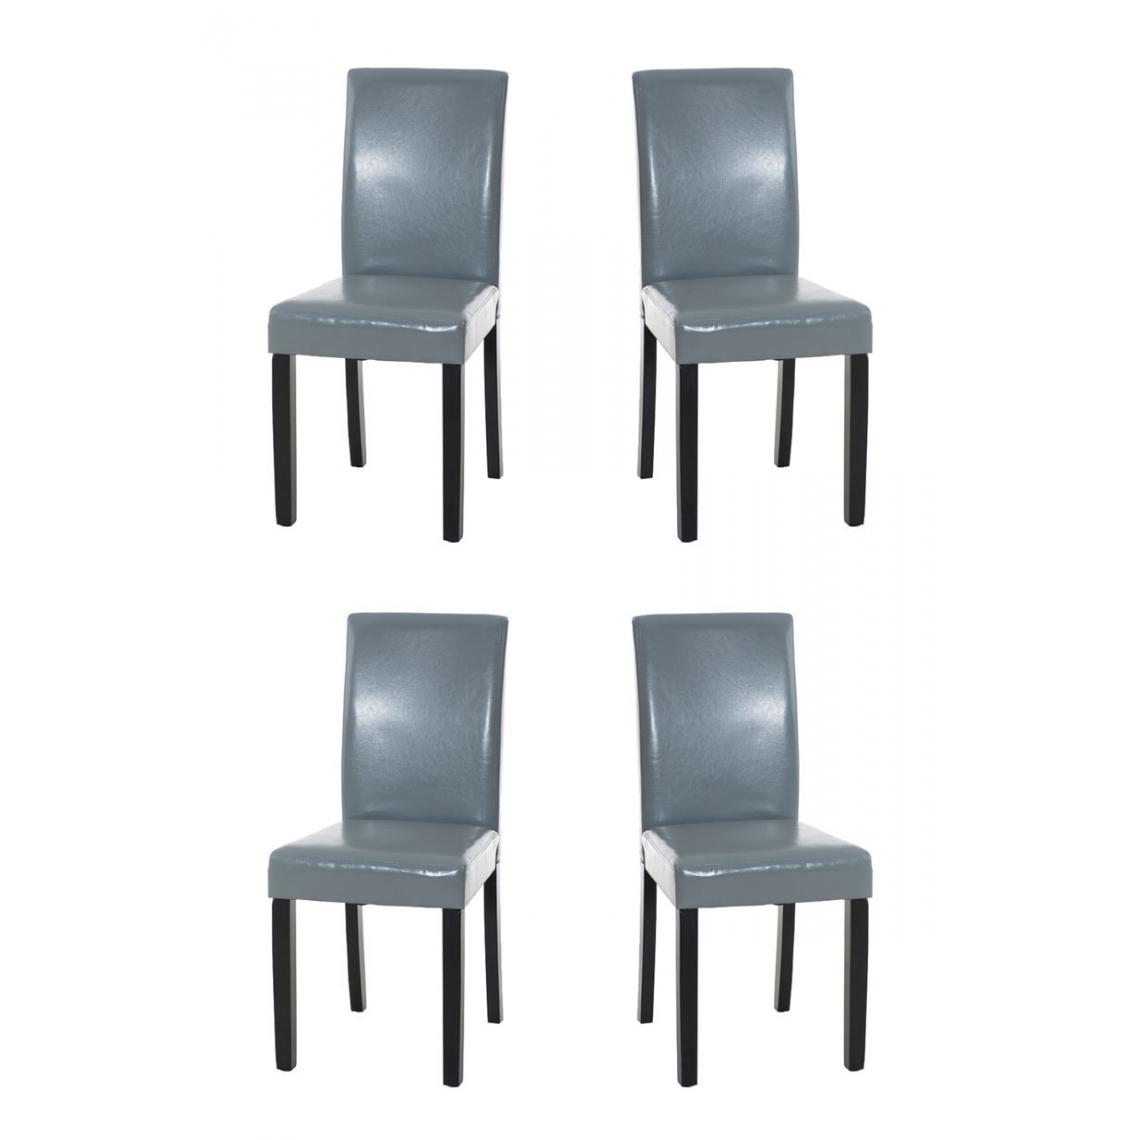 Icaverne - Joli Lot de 4 chaises de salle à manger famille Rabat noir couleur gris - Chaises